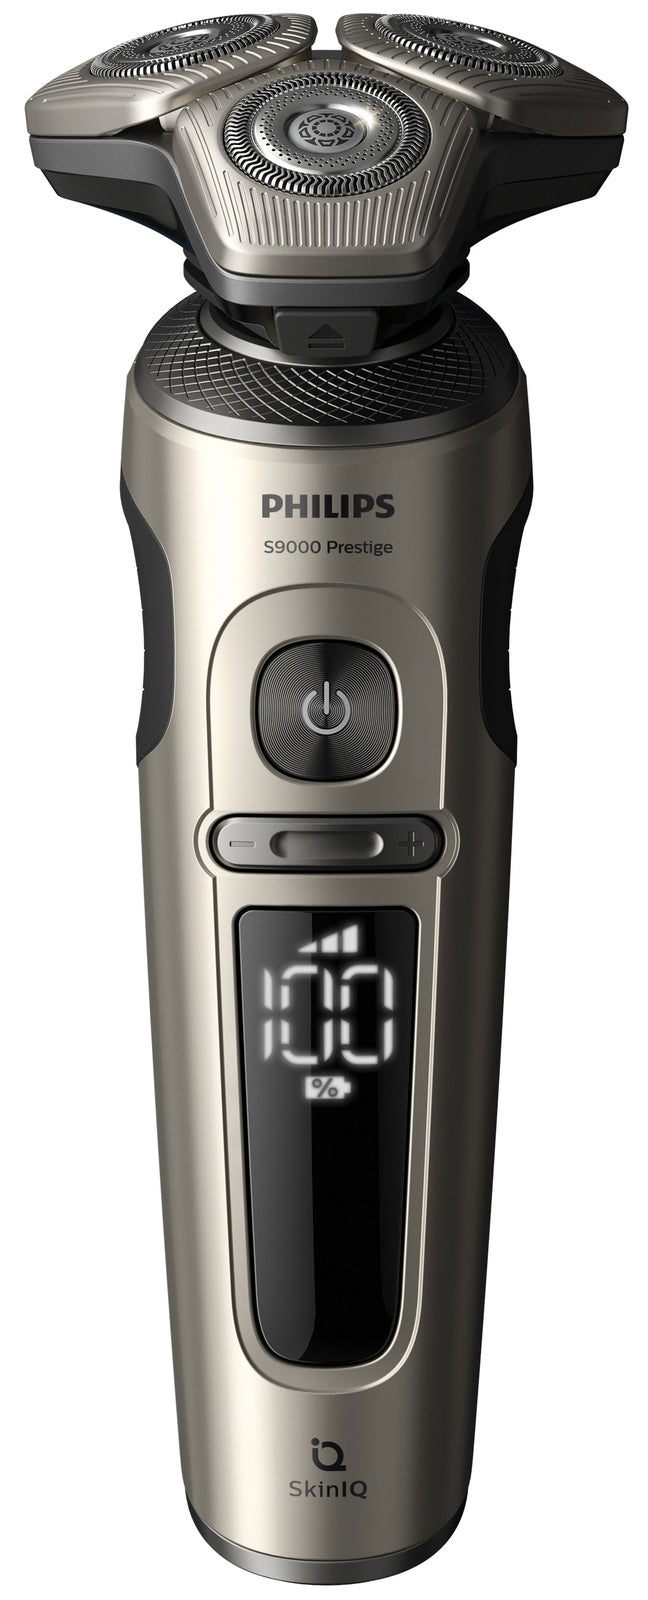 Philips: Prestige SkinIQ Shaver (SP9883/35)